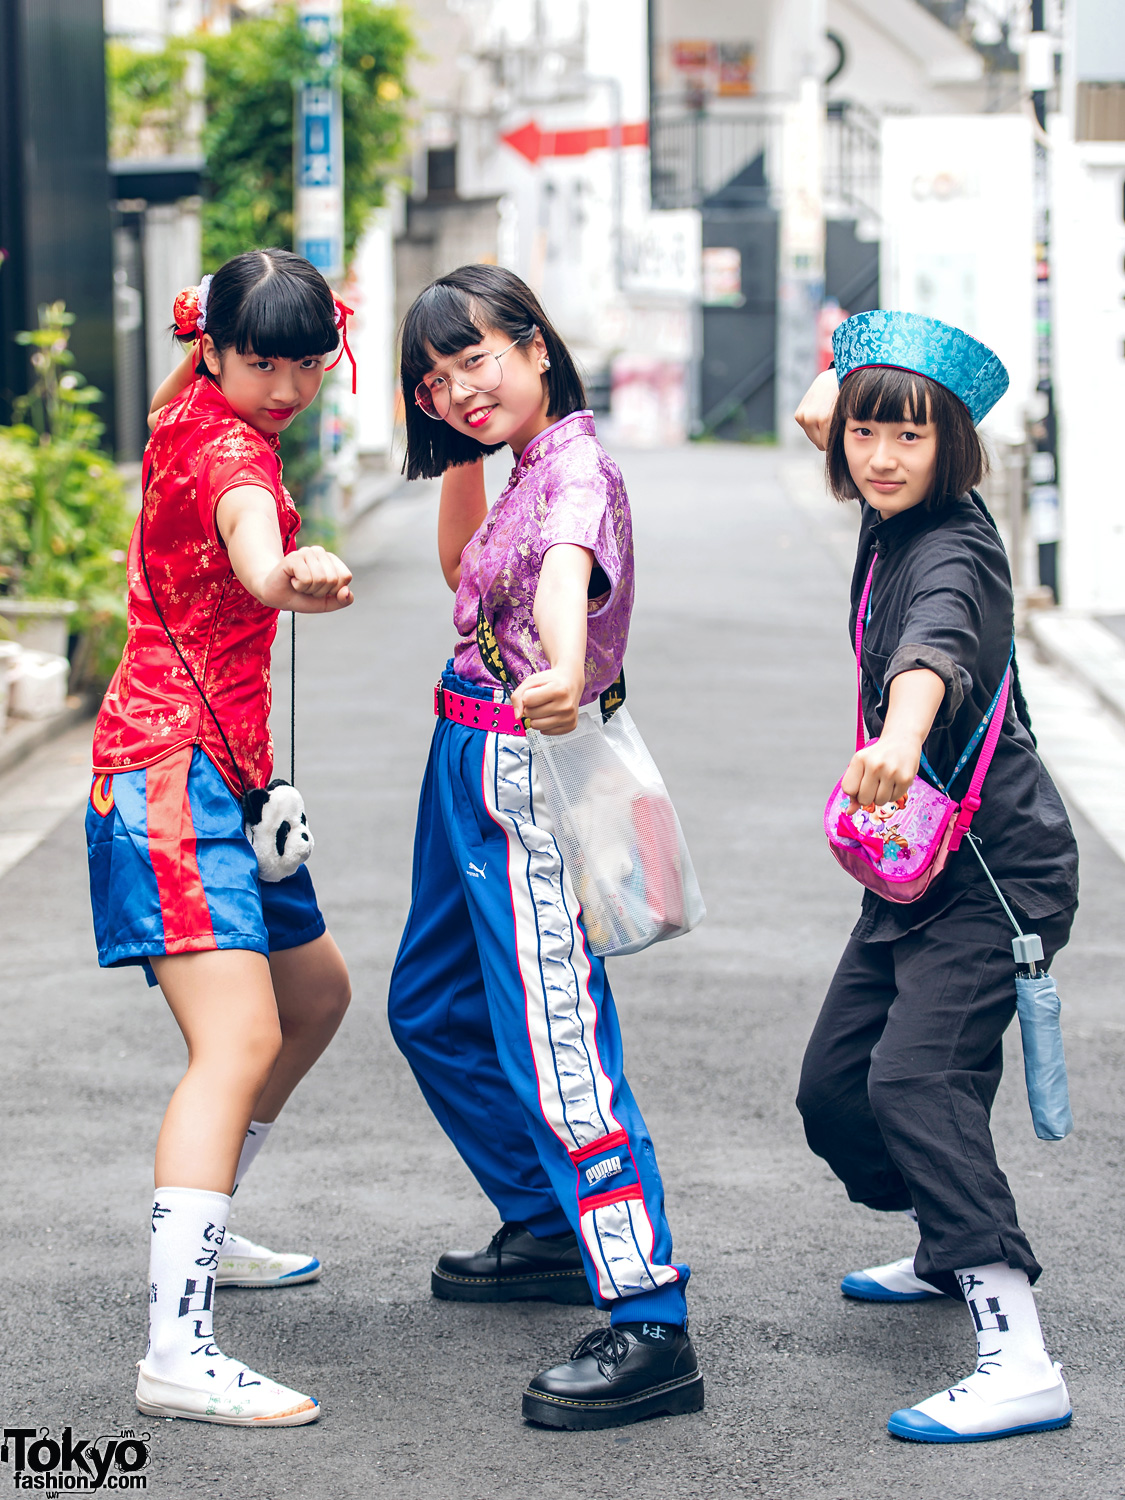 Harajuku Girls in Atarashii Gakkou No Leaders Socks, Vintage, Resale, Oh Pearl & Chinatown Fashion